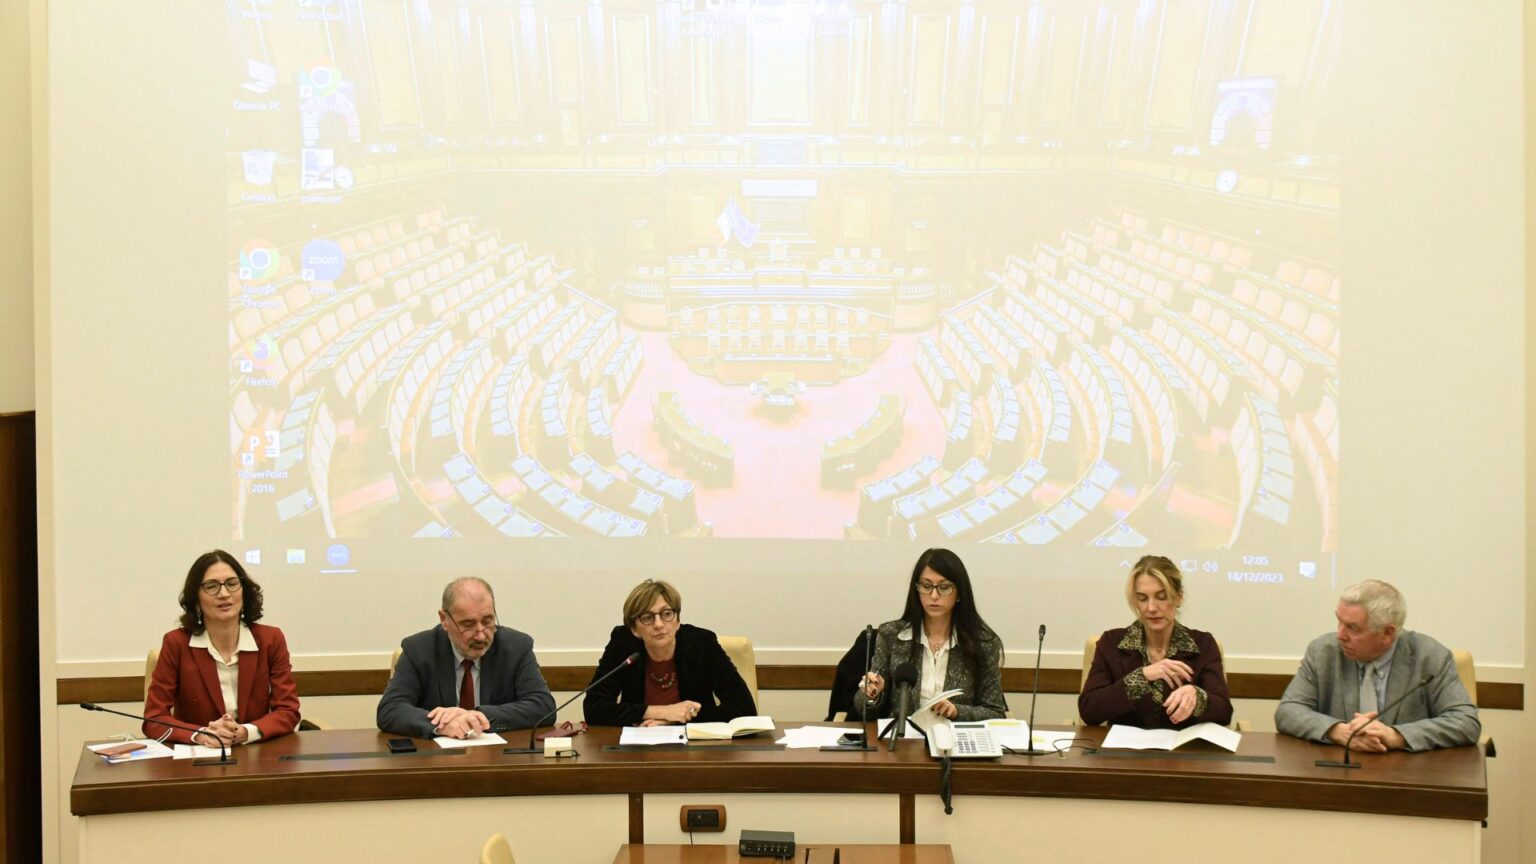 Conferenza stampa sull’emendamento presentato dalle opposizioni per finanziare misure contro la violenza sulle donne